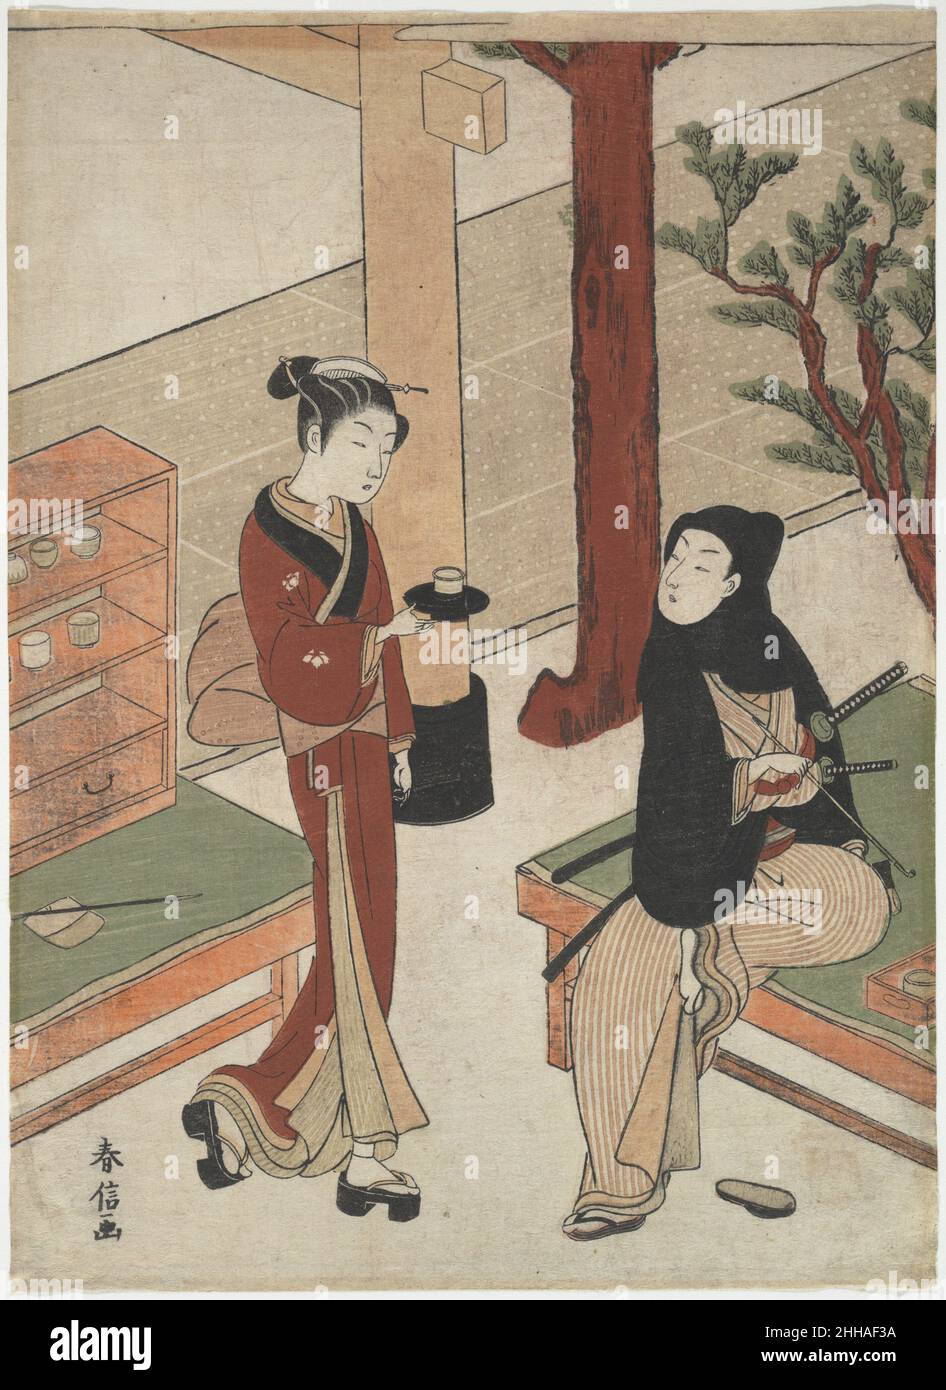 Osen wartet auf einen jungen Samurai Ca. 1770 Suzuki Harunobu Japanese das Familienwappen der Paulownia auf ihrem Kimono und das teilweise sichtbare Torii-Tor kennzeichnen das Thema dieses Abdrucks als Osen, anmutige Kellnerin des Kagiya-Teehauses am Eingang zum Kasamori-Inari-Schrein. Ein junger Samurai, zwei Schwerter an der Hüfte, sitzt entspannt auf einer Bank und dreht sein Gesicht, um Osen anzugucken, der sich nähert, um ihm Tee zu servieren. Das schöne Osen und der gutaussehende Gallant sind das Bild von stilvollen Edoiten aus der Mitte des achtzehnten Jahrhunderts. Osen Waiting on a Young Samurai 40991 Stockfoto